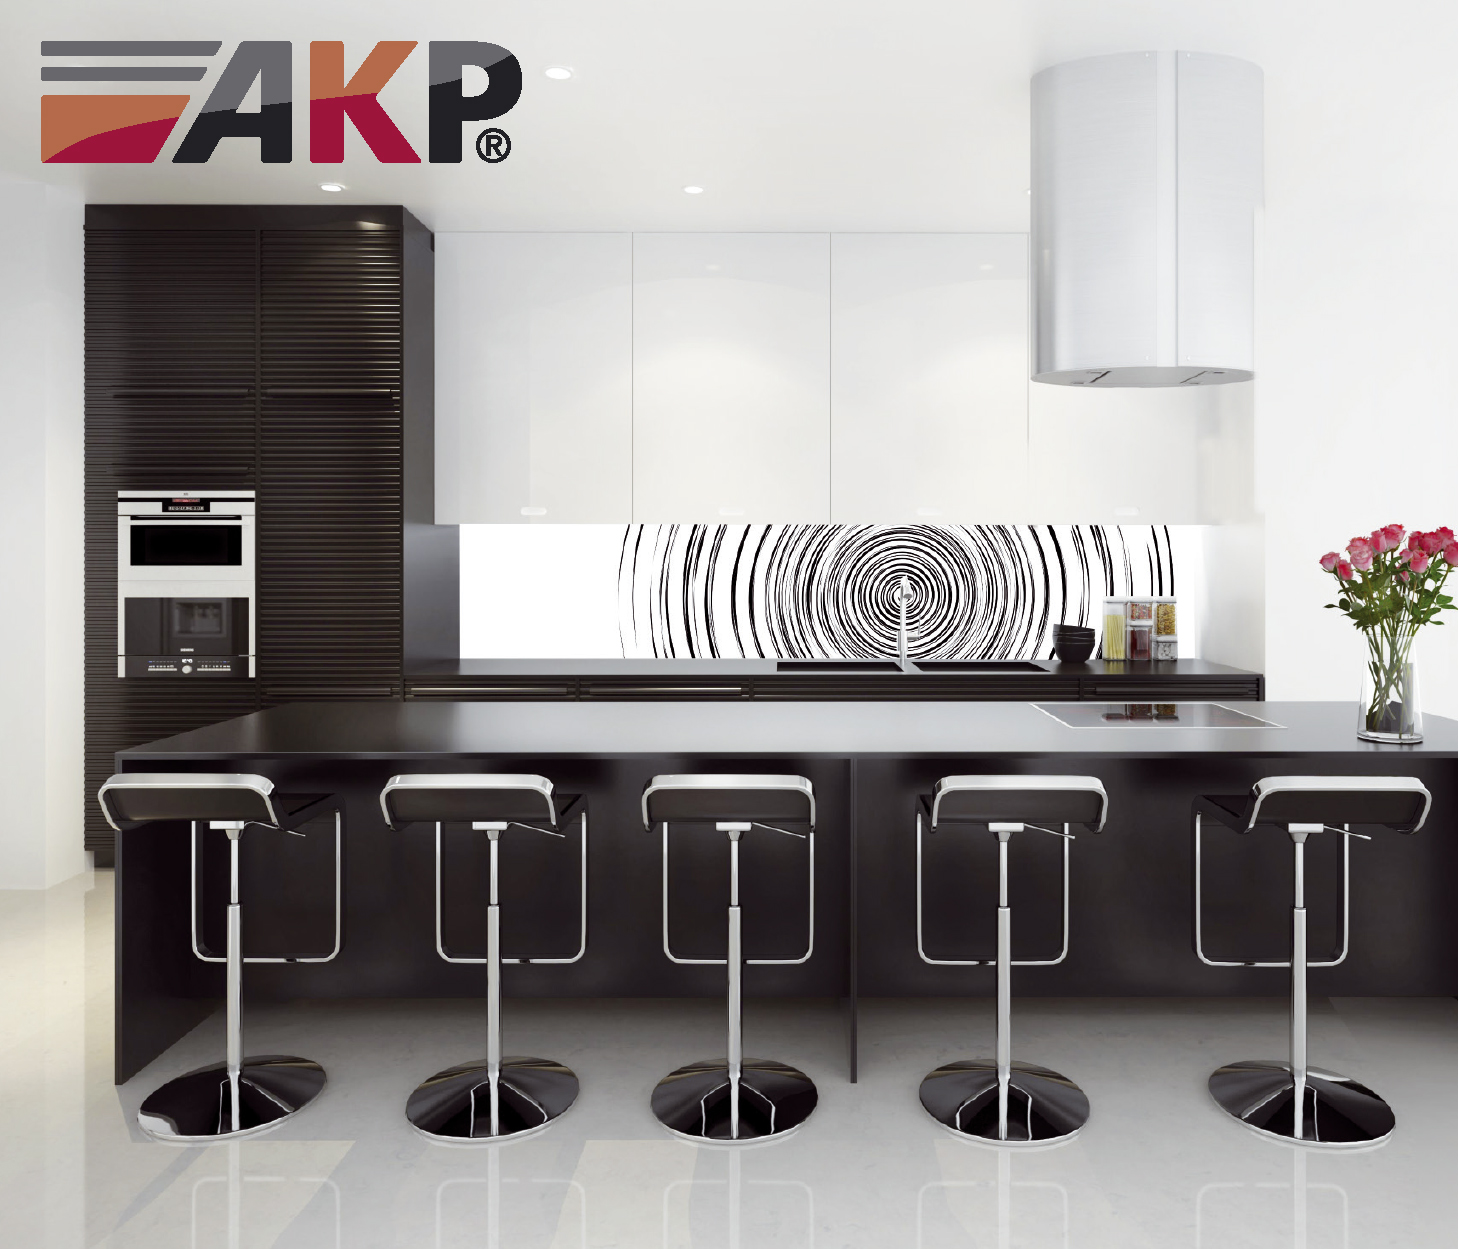 AKP Küche Bild 5